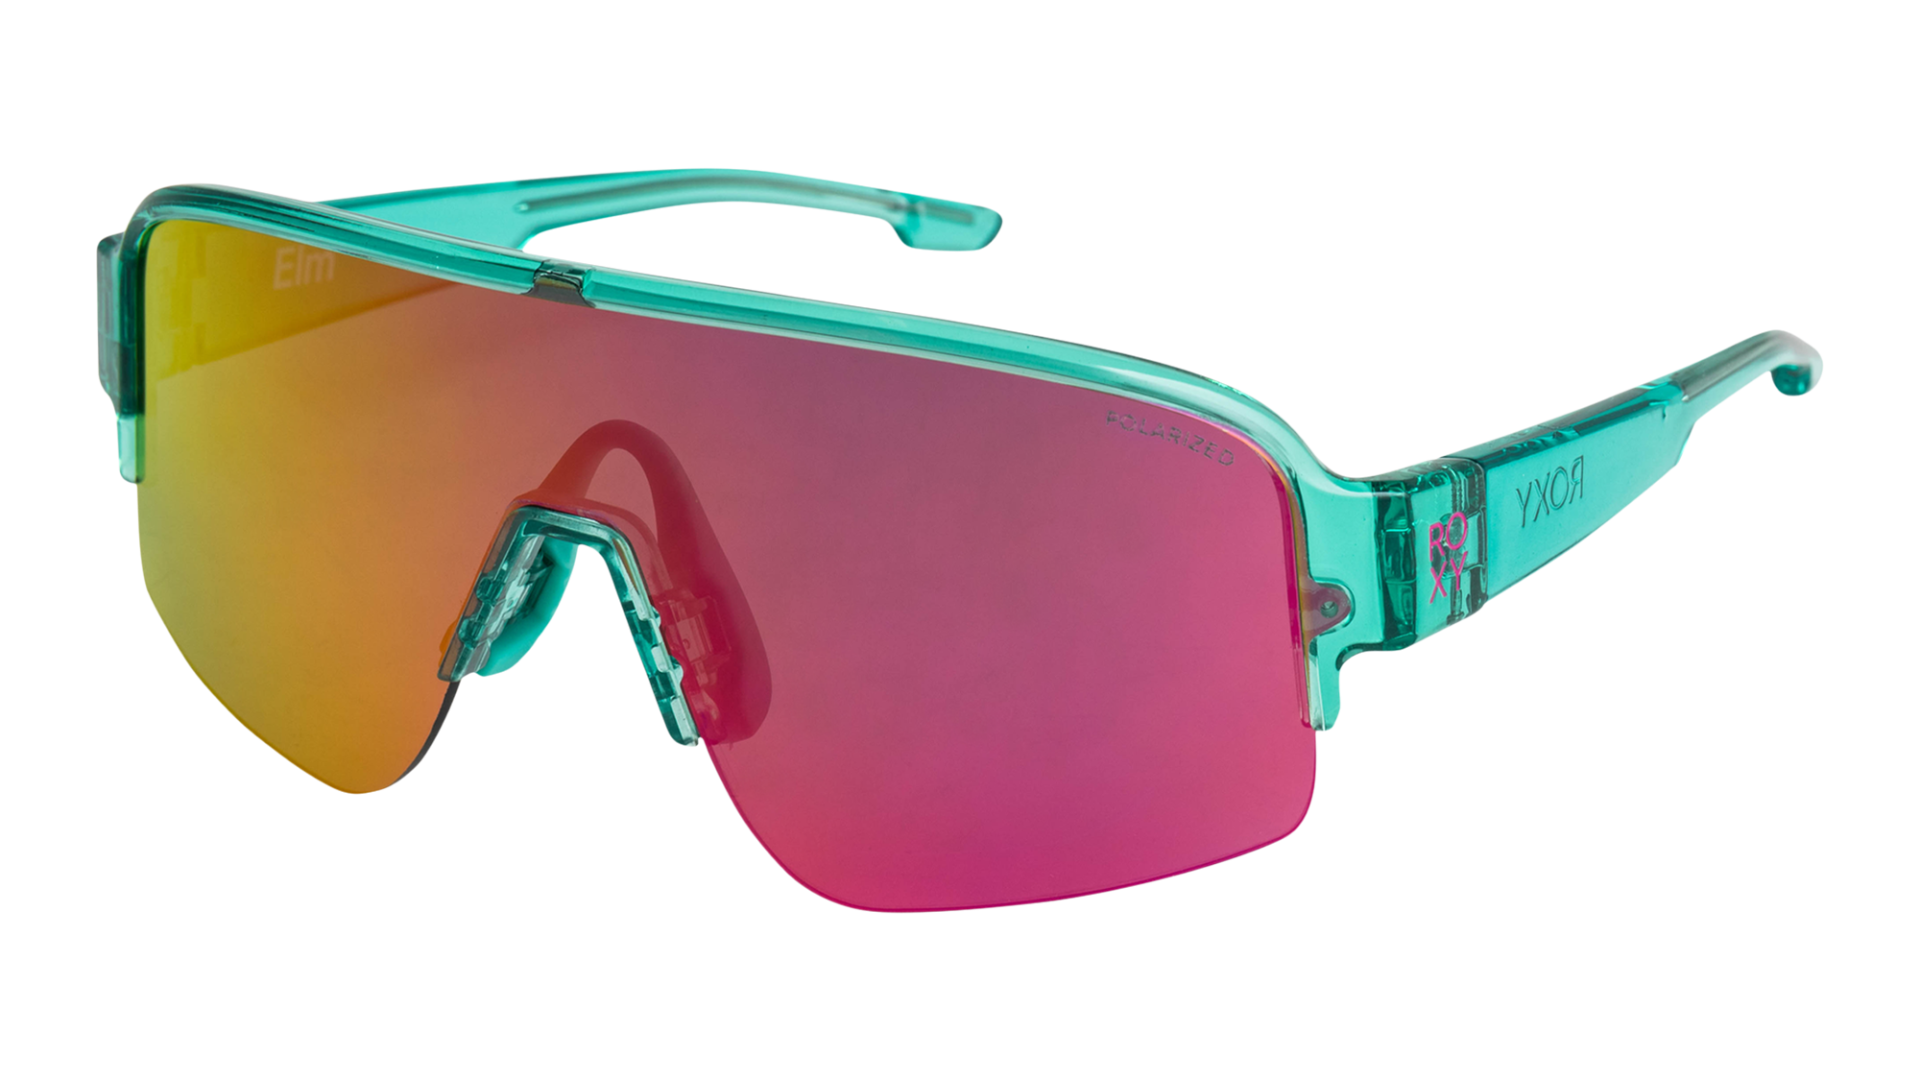 Roxy 2023 Sunglasses Preview SOURCE Boardsport 